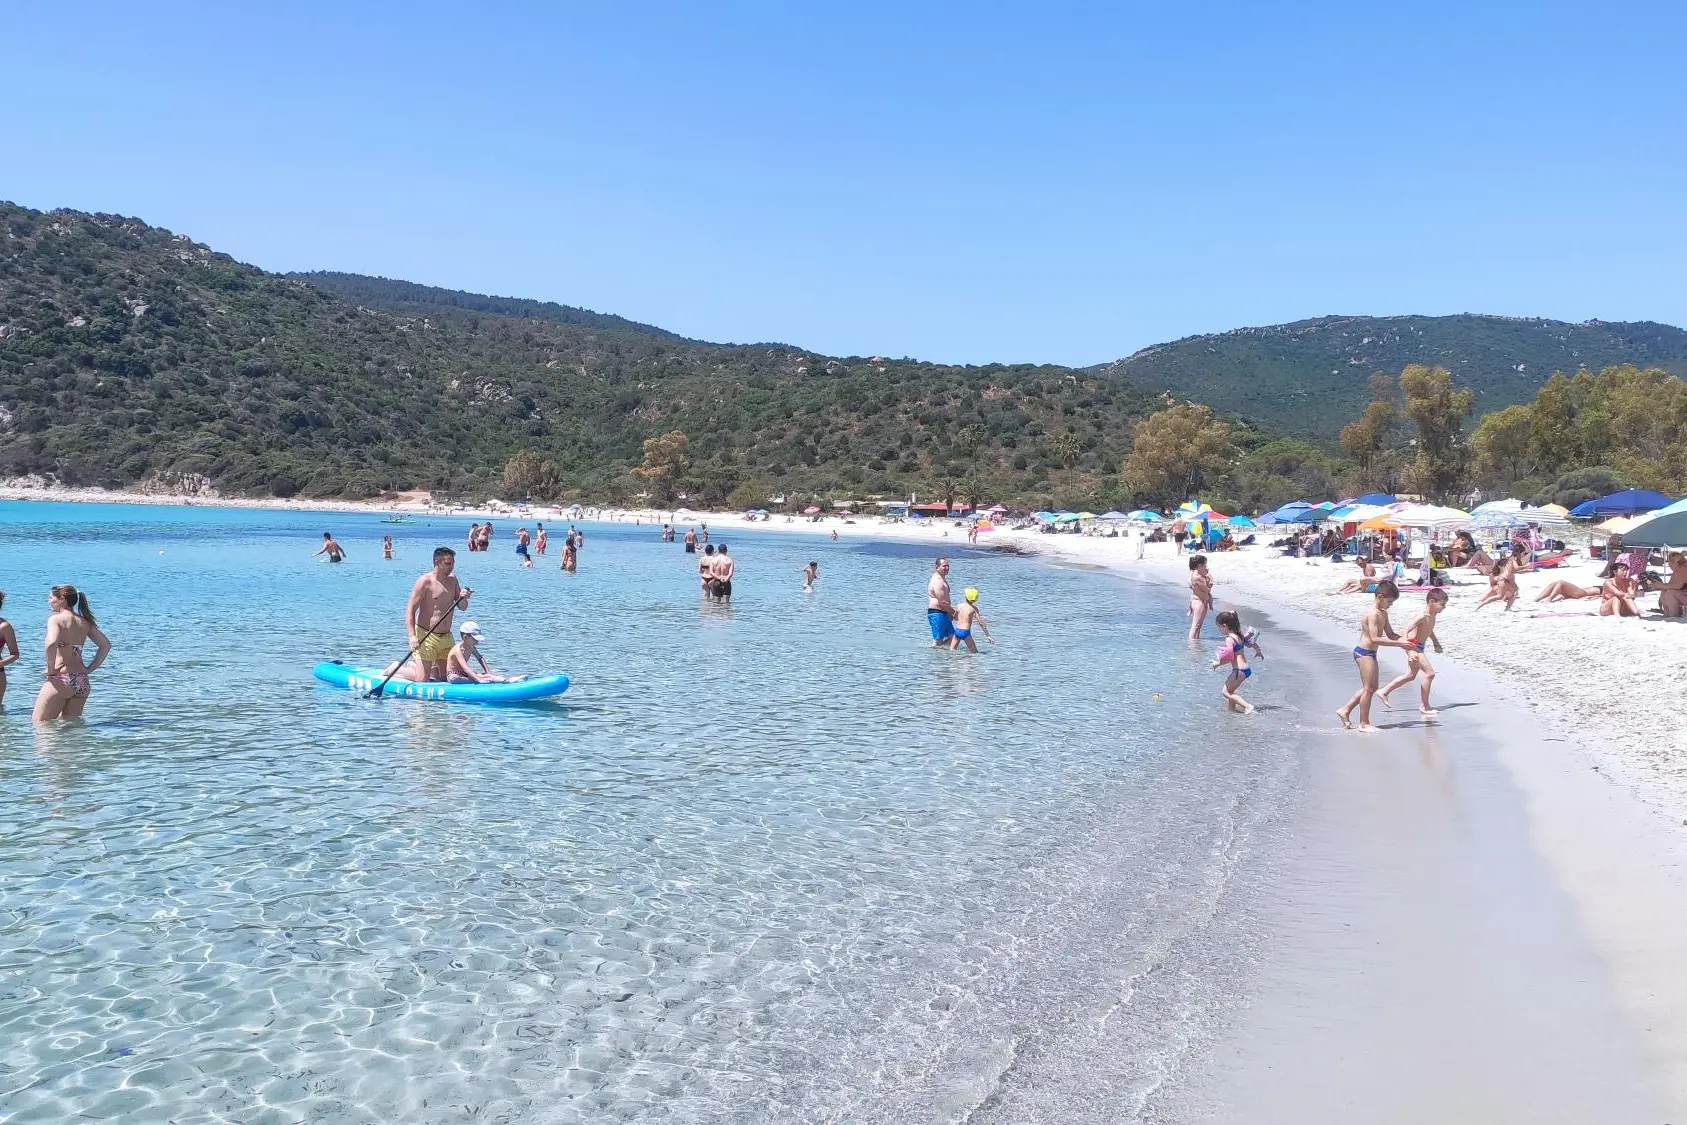 Cala Pira è una delle spiagge più belle e amate della Sardegna: 400 metri di sabbia bianca in un mare turchese, verde smeraldo